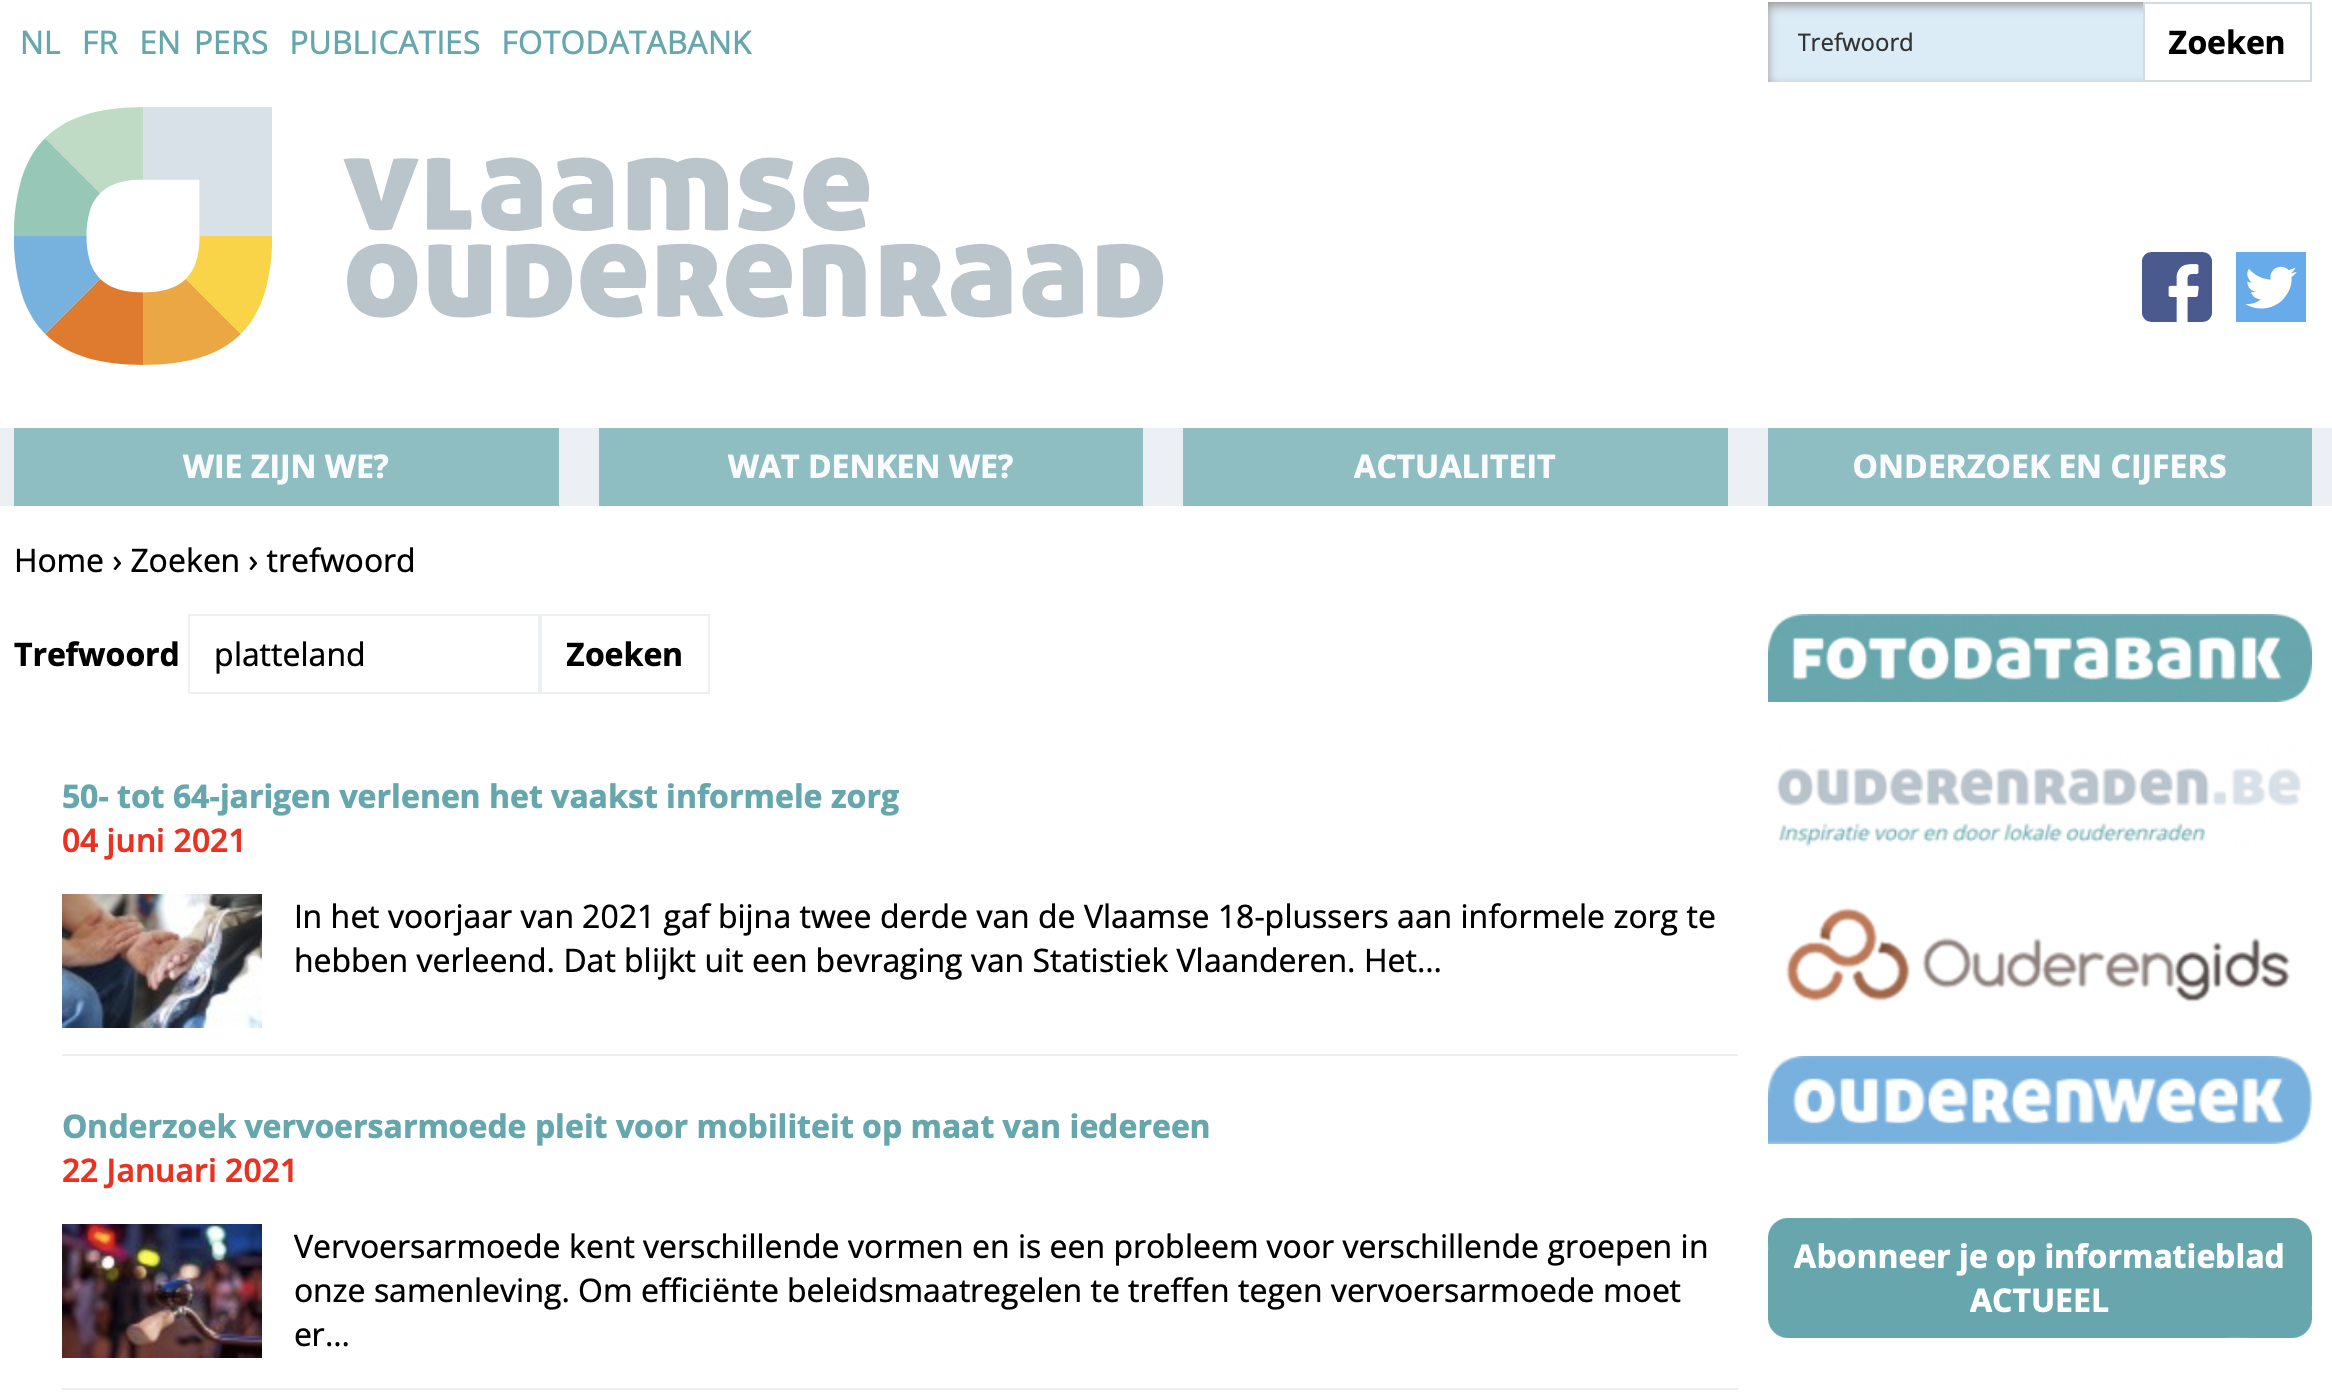 Website Vlaamse Ouderenraad